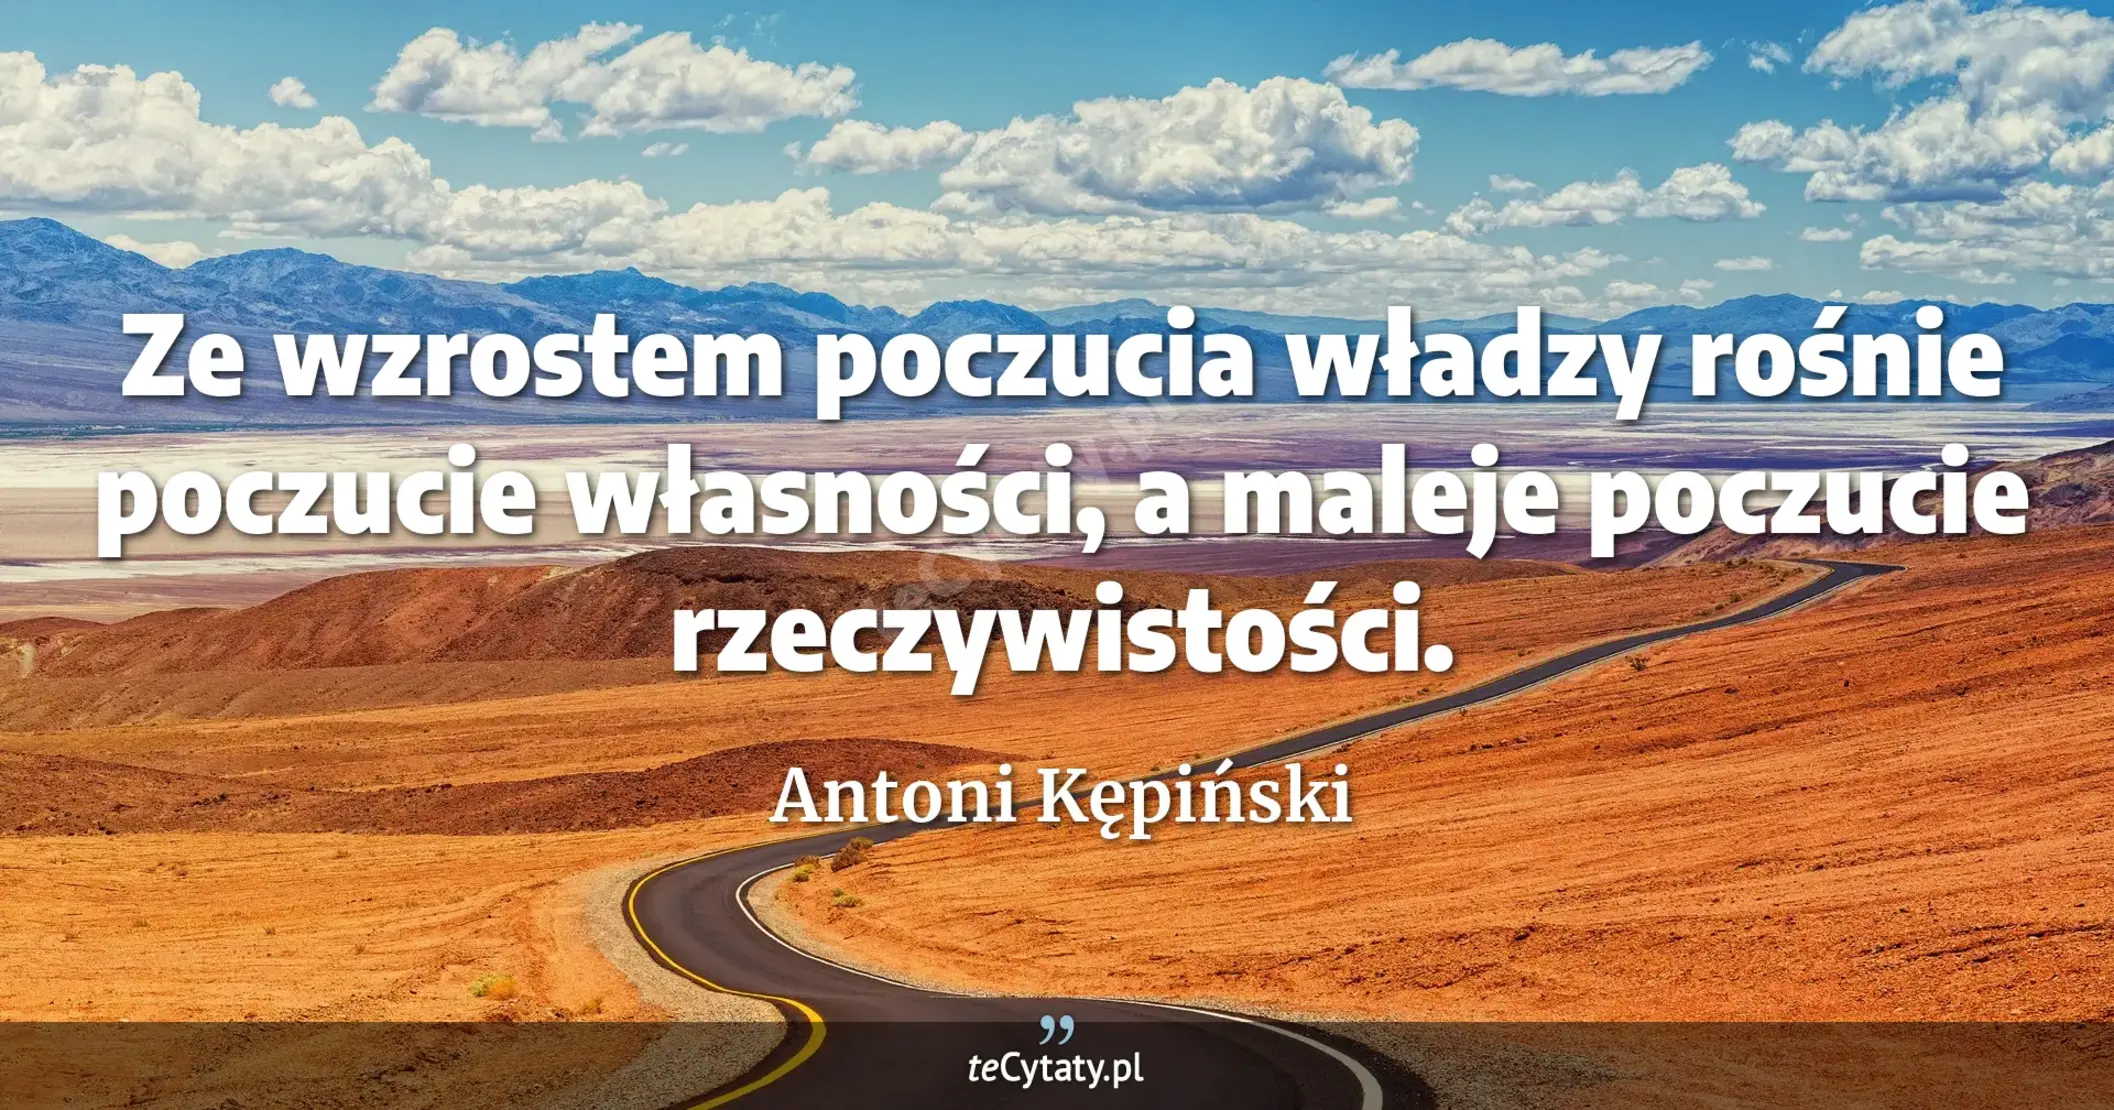 Ze wzrostem poczucia władzy rośnie poczucie własności, a maleje poczucie rzeczywistości. - Antoni Kępiński